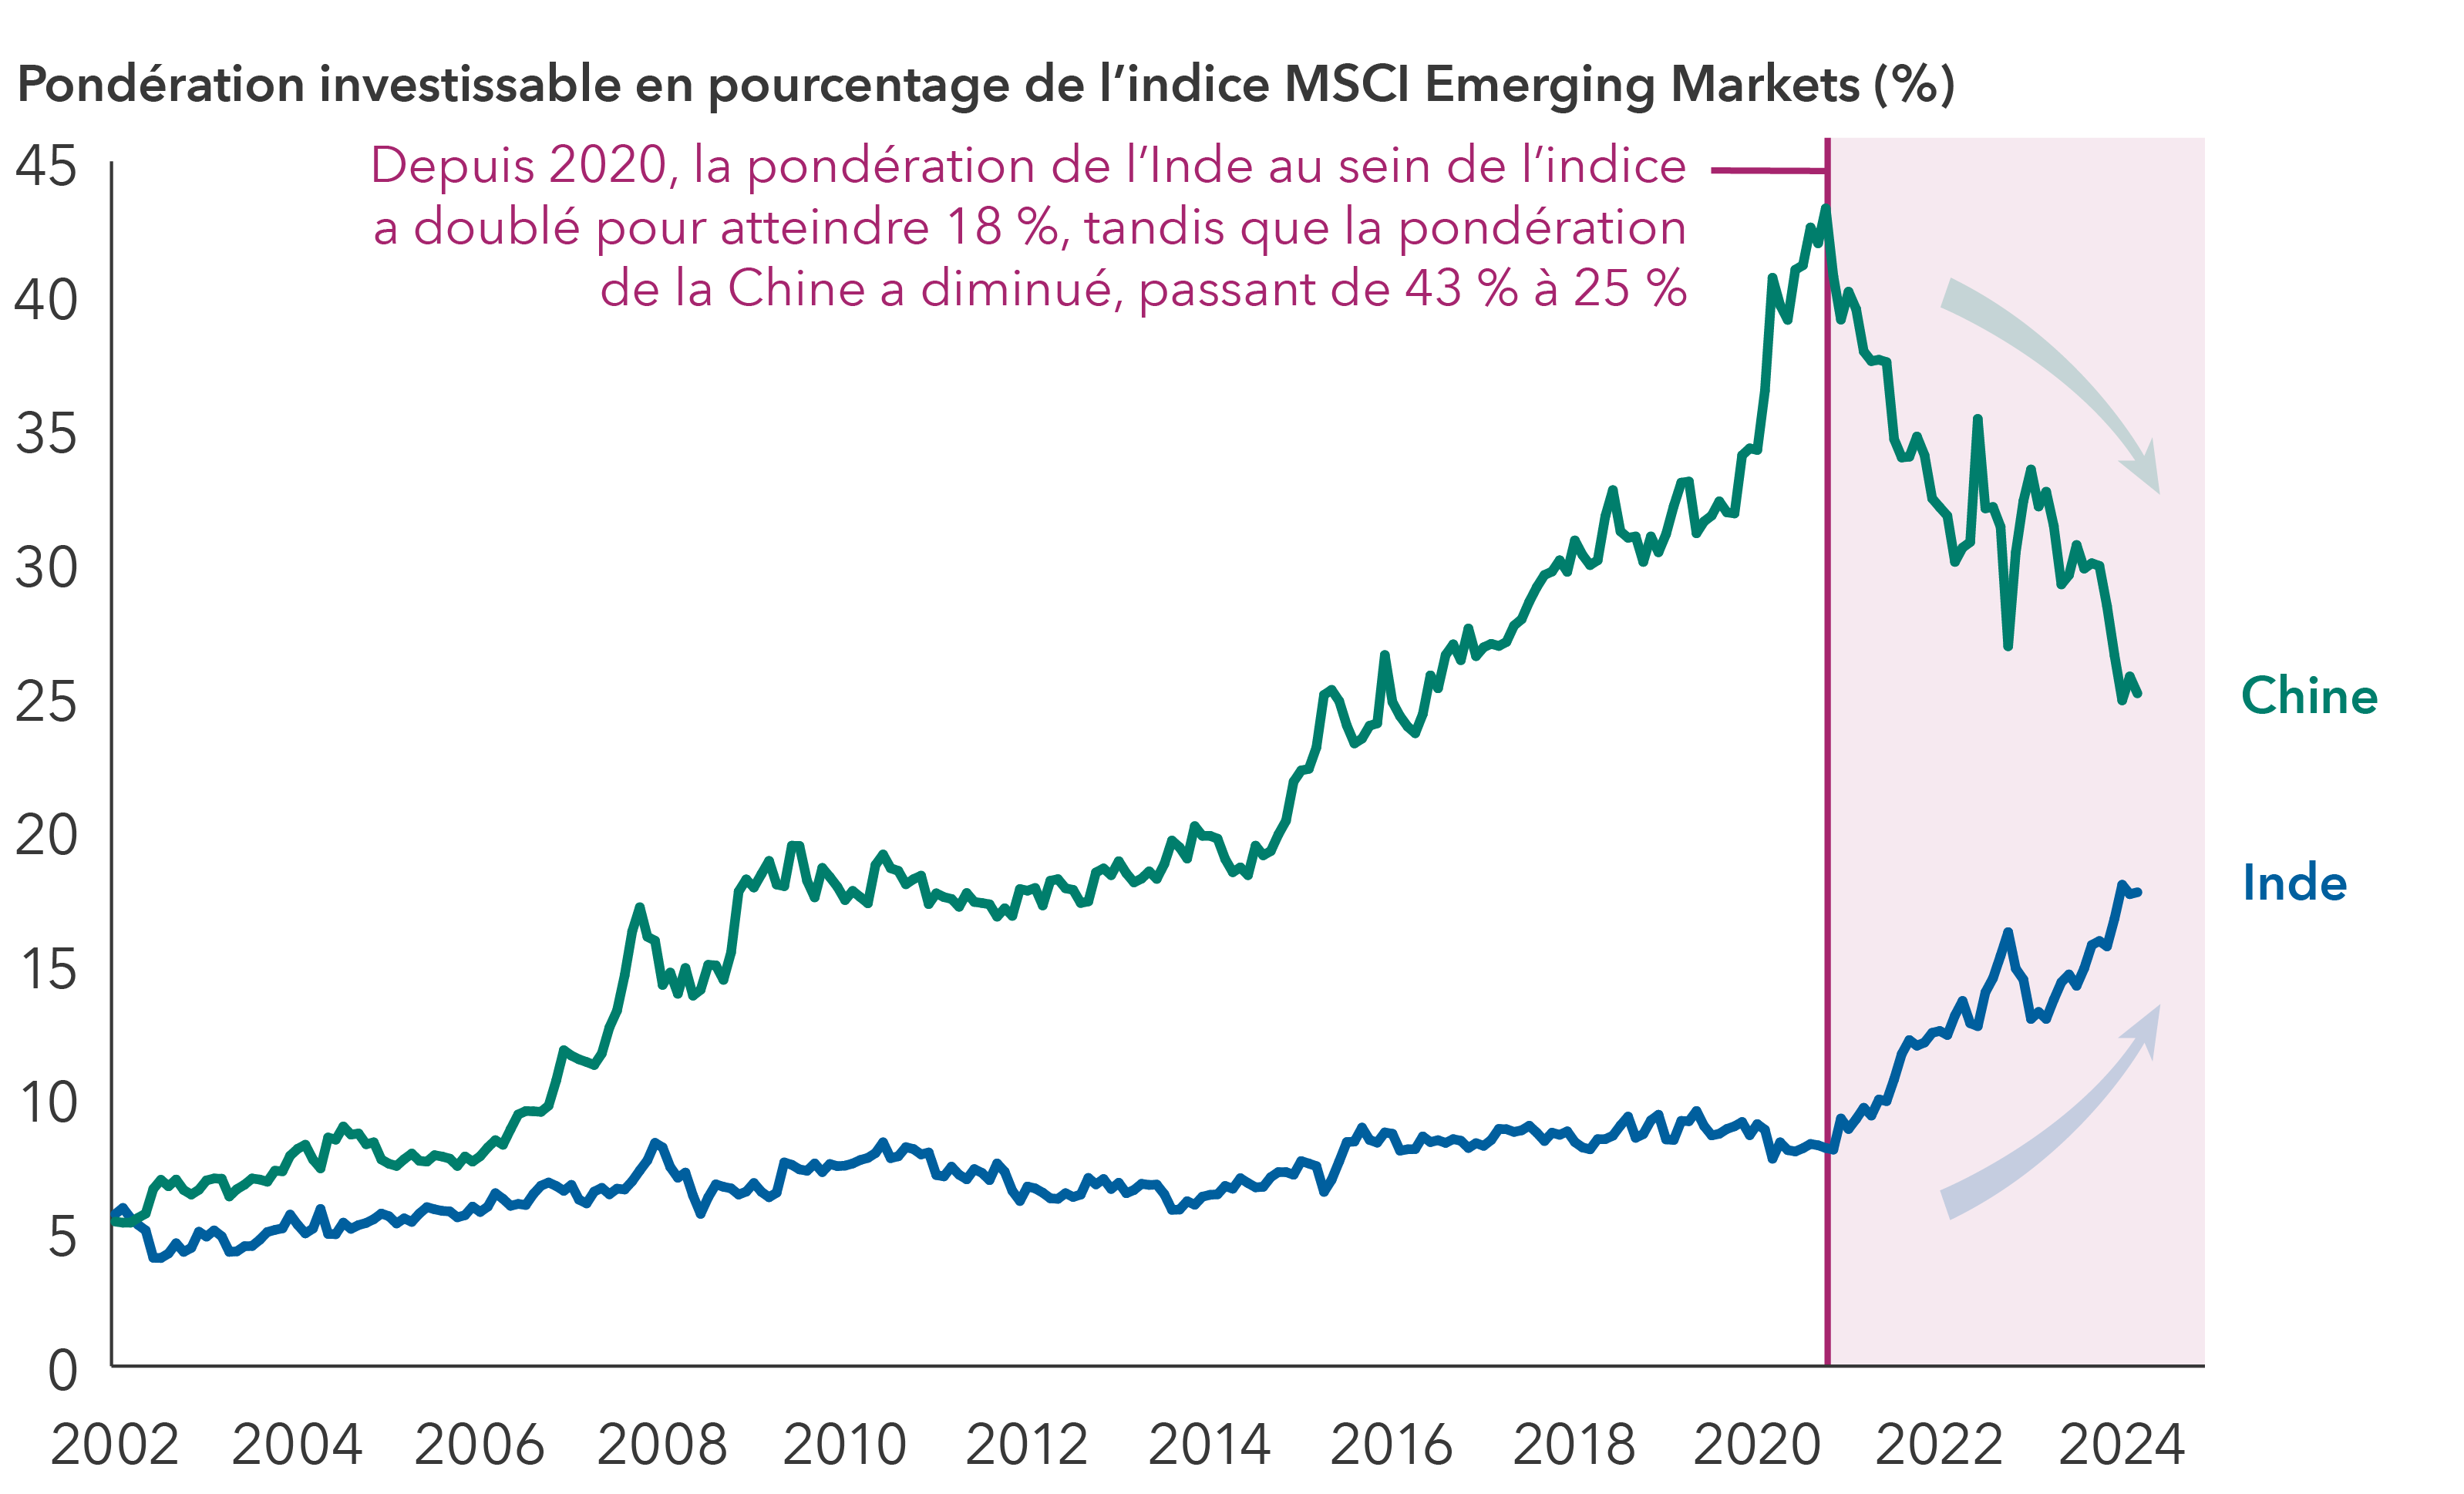 Un graphique linéaire illustrant la pondération des pays dans l’indice MSCI Emerging Markets, exprimé en pourcentage, de 2001 à 2024. On distingue deux lignes, l’une représentant la Chine et l’autre l’Inde. L’axe des abscisses indique les années, tandis que l’axe des ordonnées présente le poids en pourcentage, de 0 % à 45 %. La ligne de la Chine commence à 5,40 % le 31 janvier 2002, augmente fortement pour atteindre un pic d’environ 43,24 % le 31 octobre 2020, puis diminue pour atteindre 25,13 % le 31 mars 2024. La ligne de l’Inde commence à 5,68 % le 31 janvier 2002 et augmente progressivement pour atteindre 17,70 % le 31 mars 2024. Une zone grisée commençant à la fin de 2020 et se terminant le 31 mars 2024 met en évidence la montée de l’Inde et le déclin de la Chine.